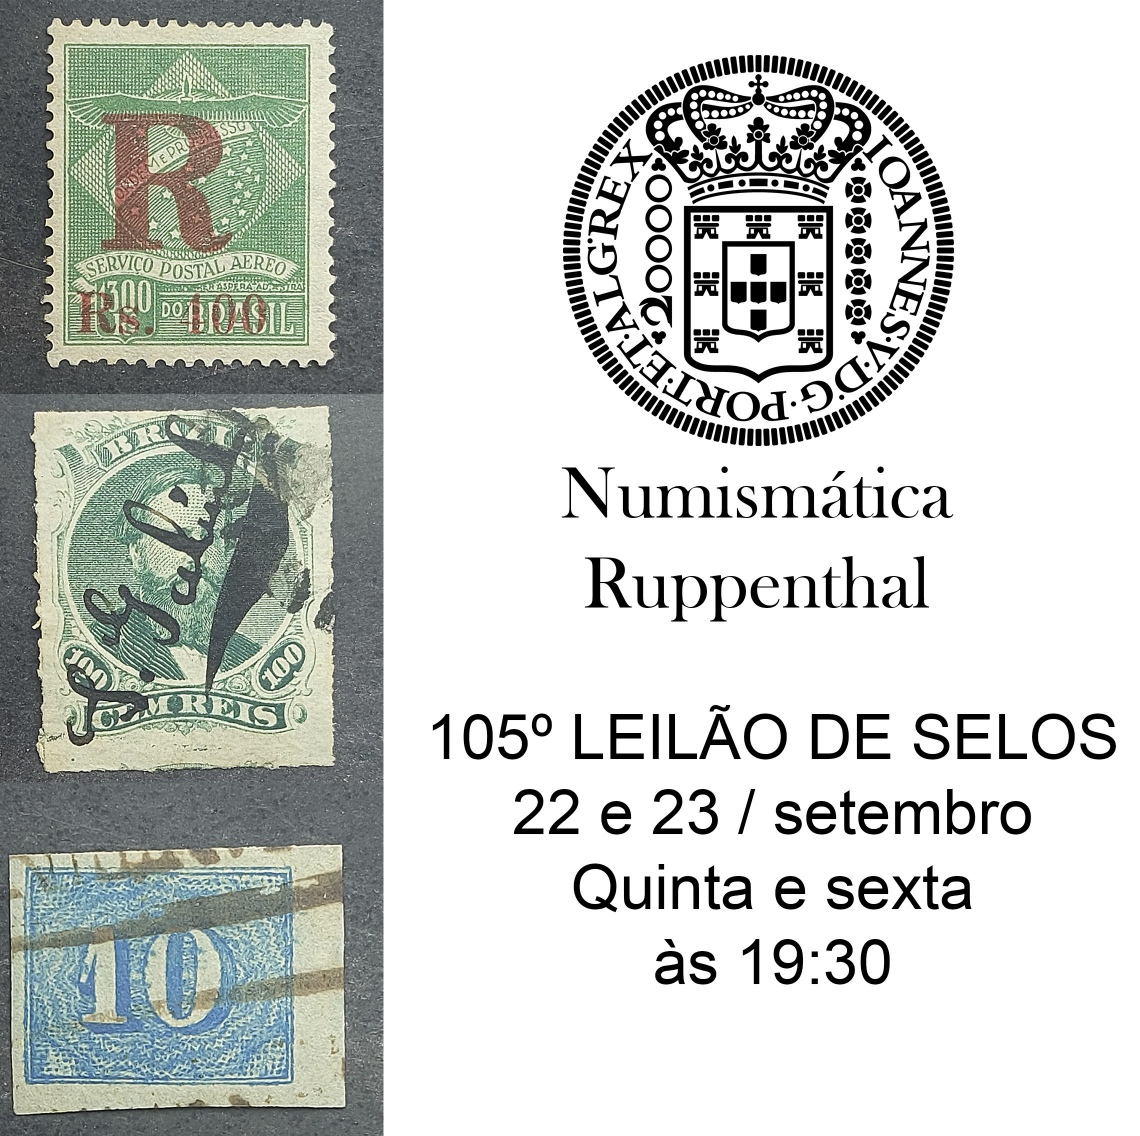 105º LEILÃO DE FILATELIA E NUMISMÁTICA - Numismática Ruppenthal